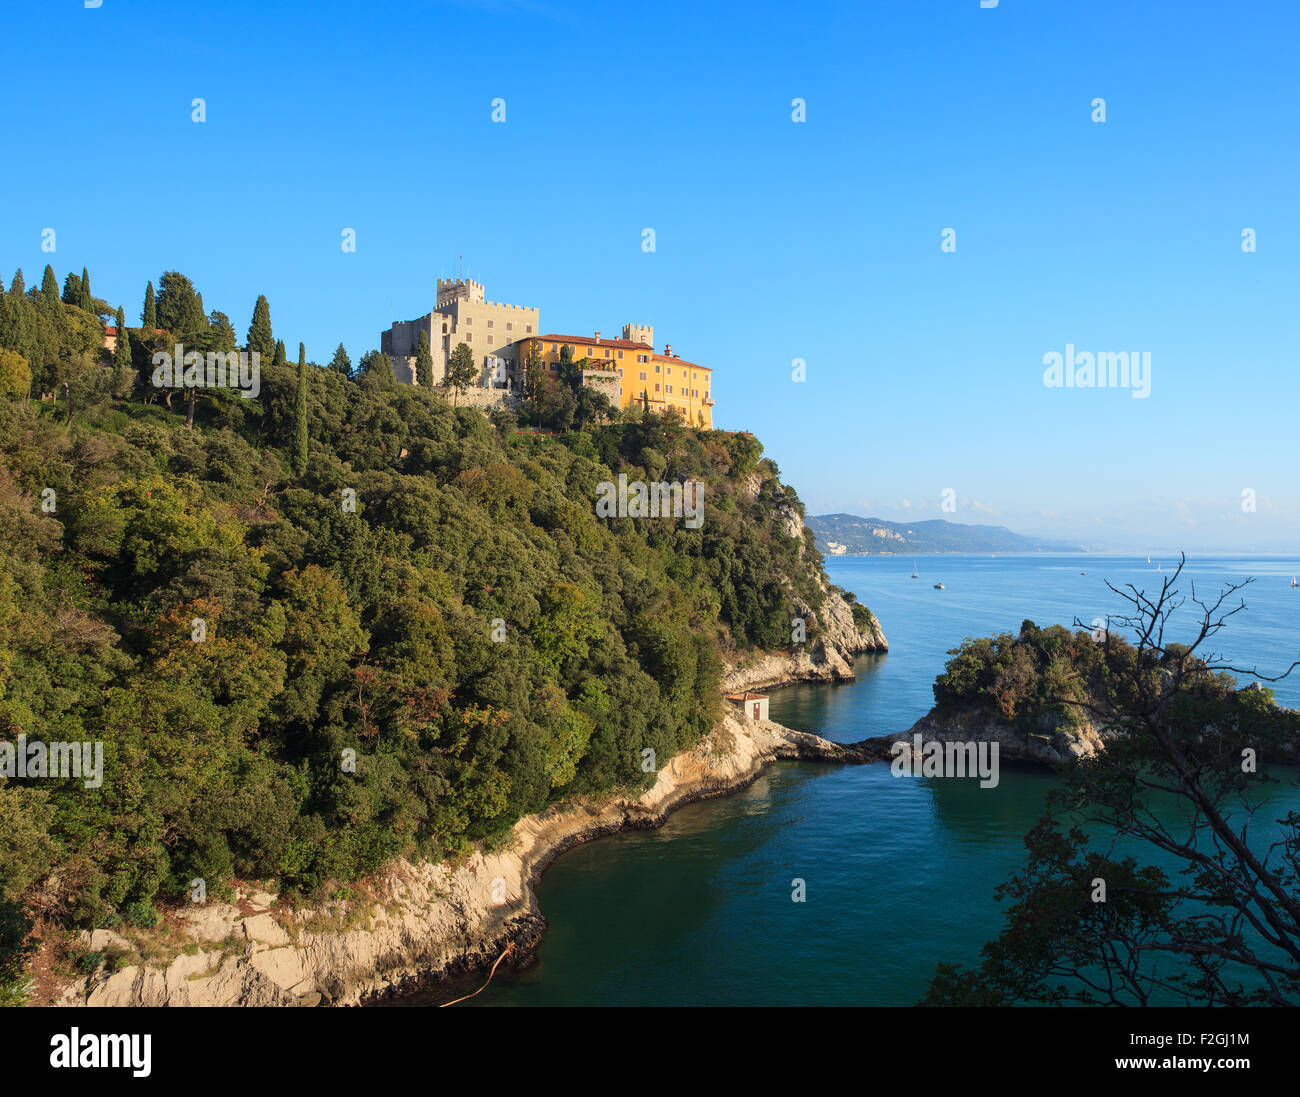 Vue sur le château de Duino en Italie Banque D'Images